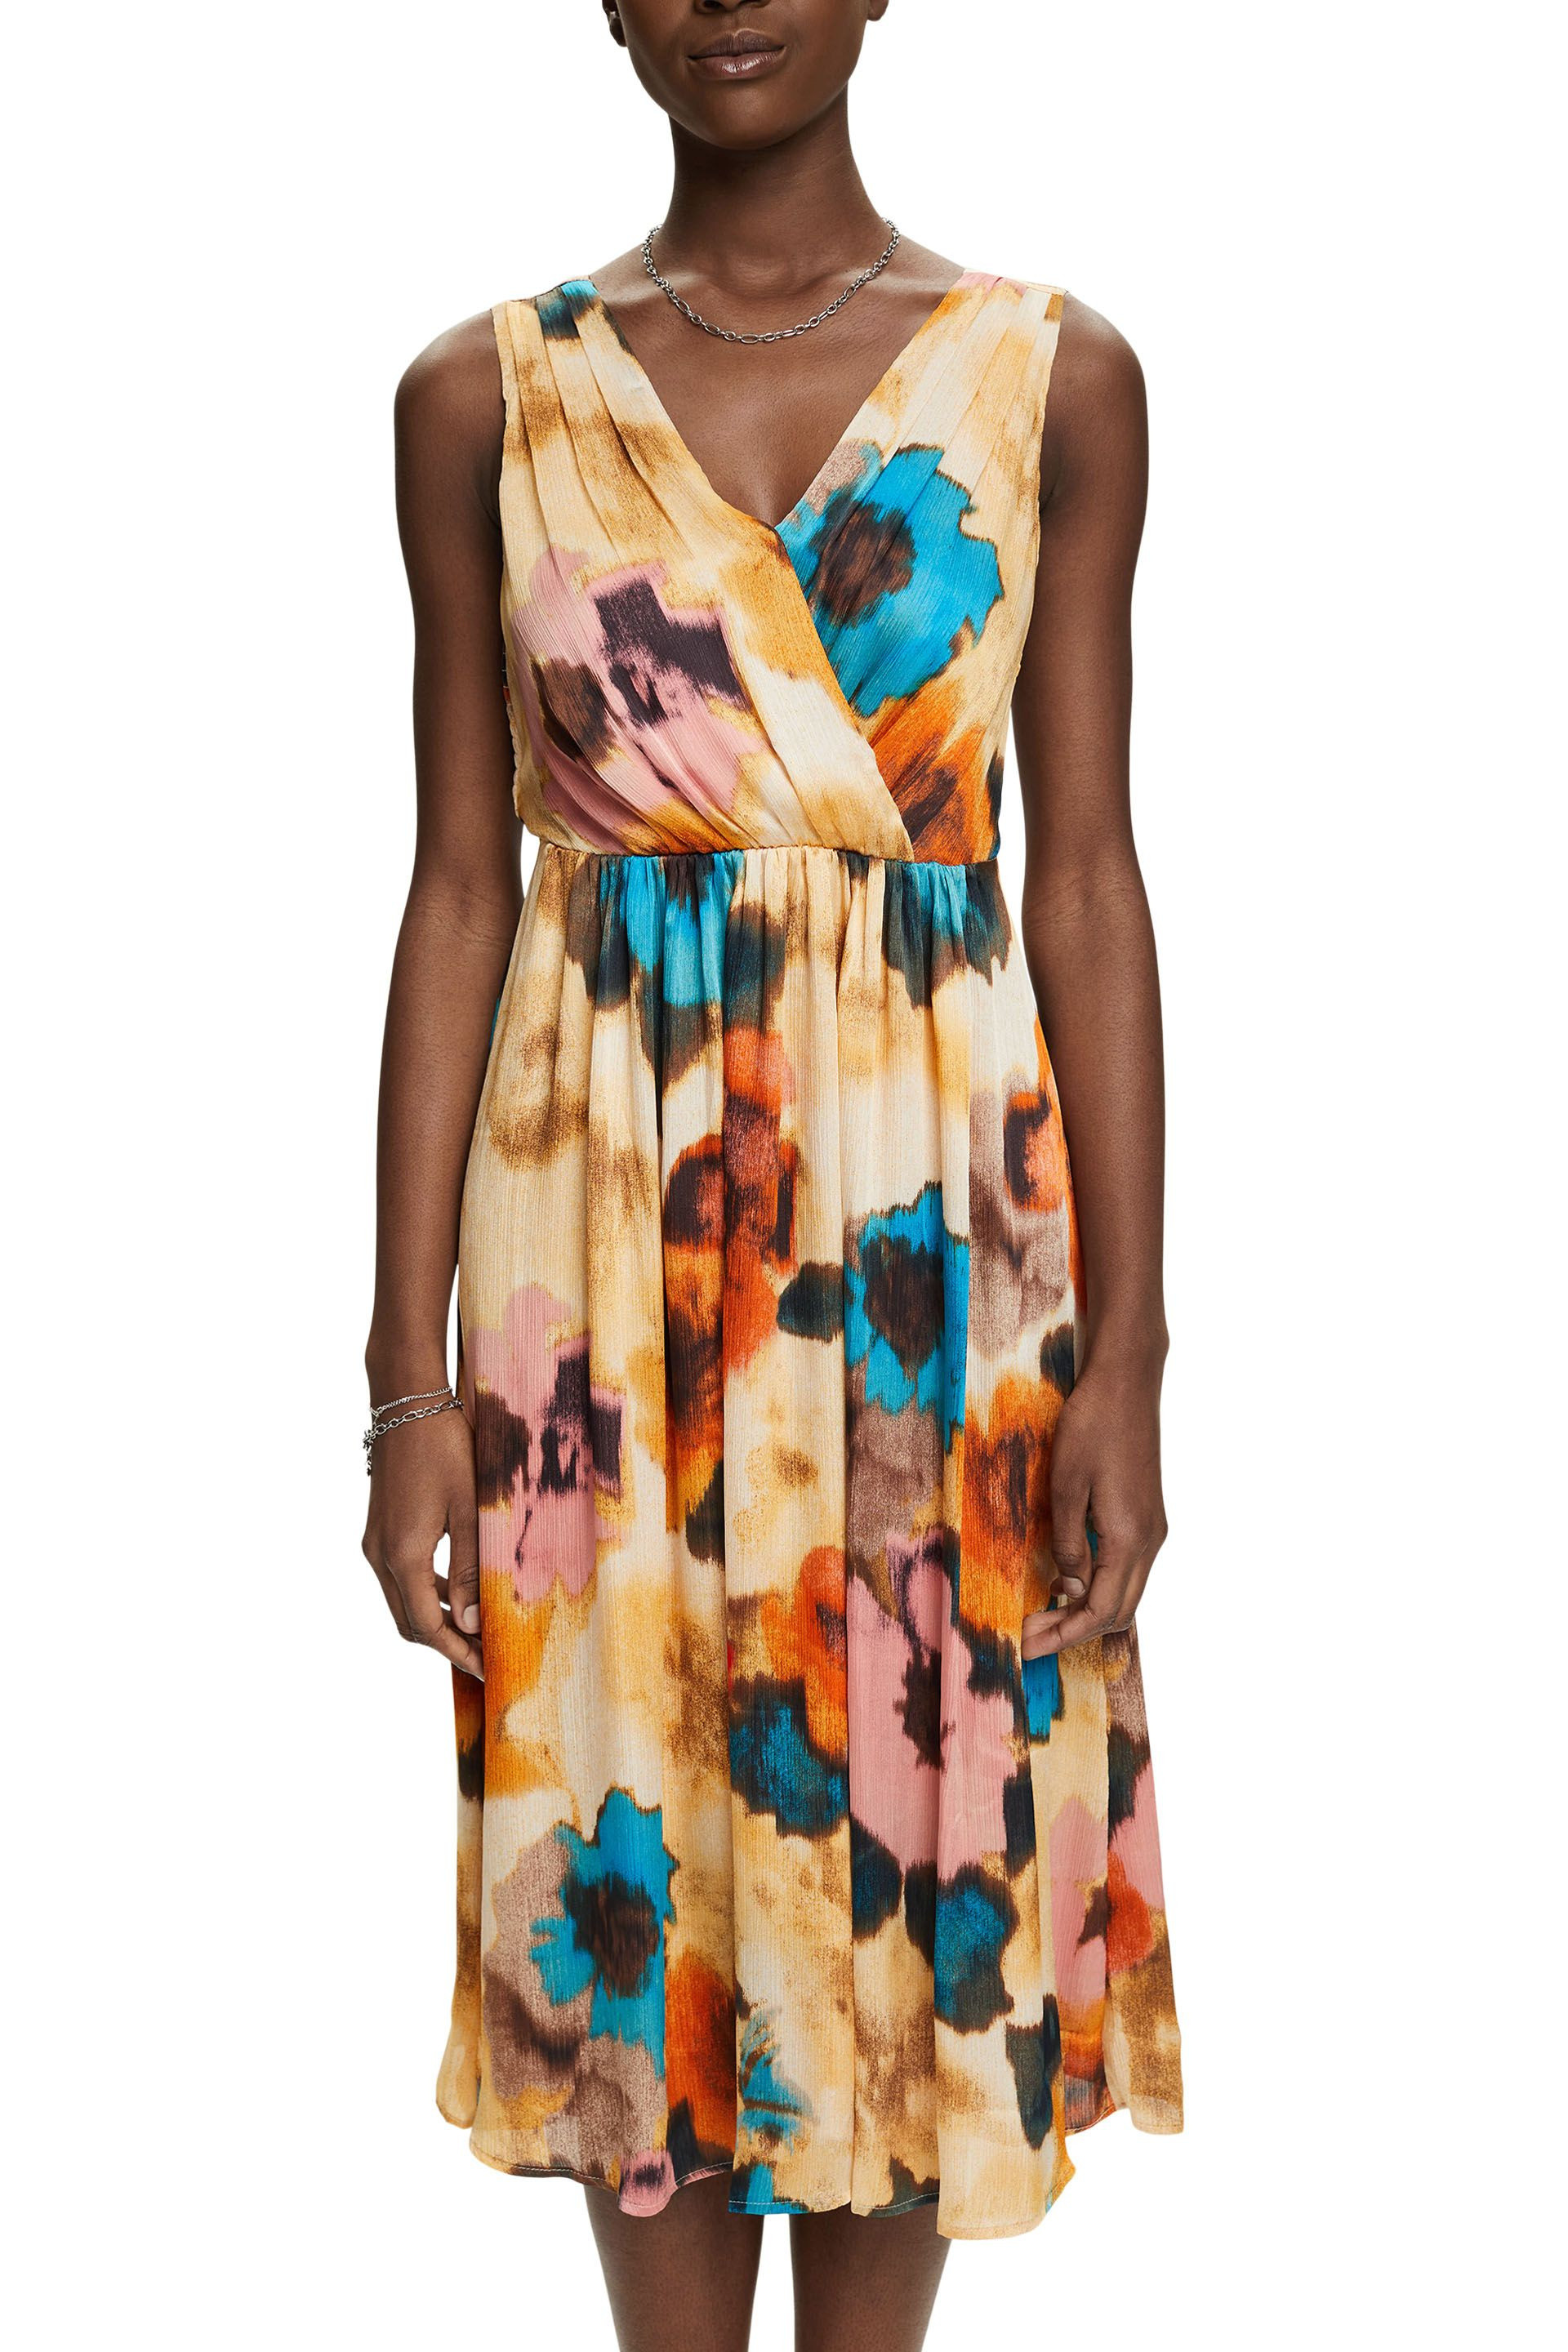 Esprit - Dress with all over floral print, Light Beige, large image number 2